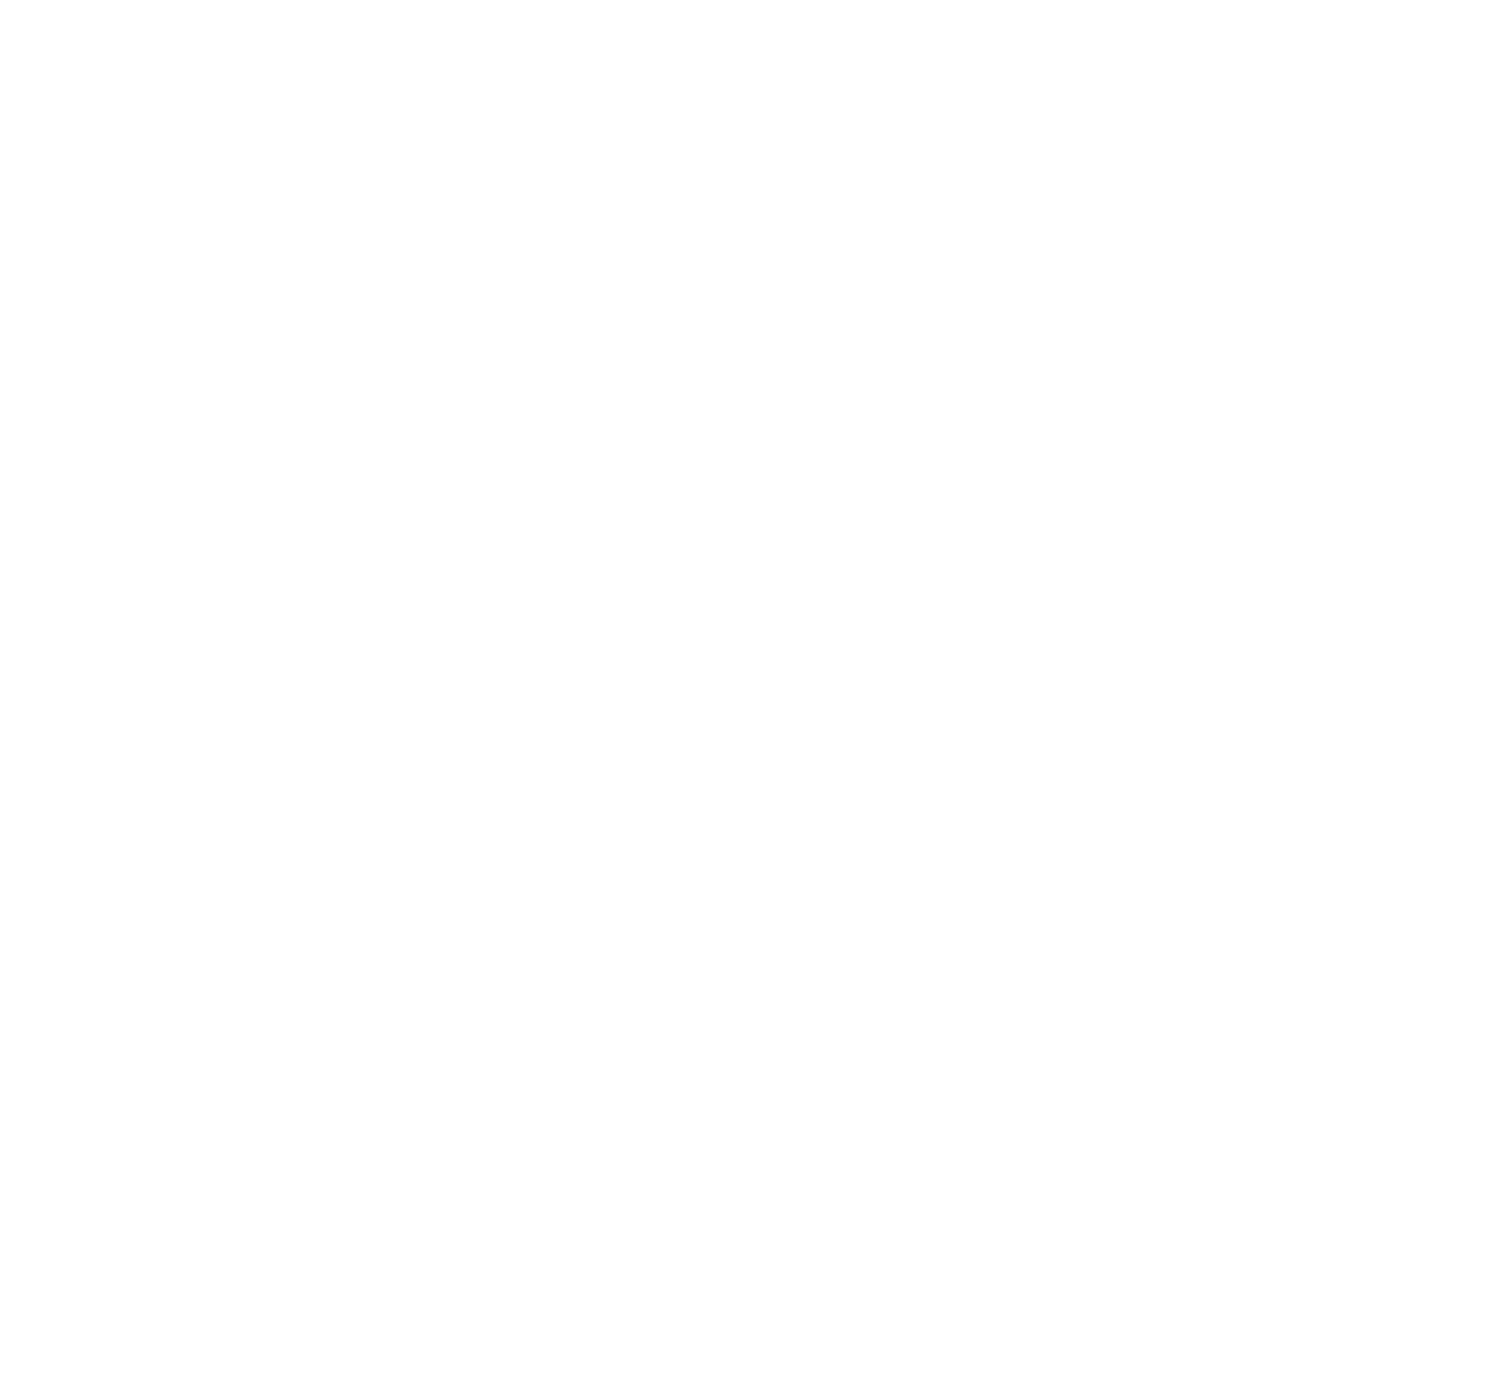 Edison logo pour fonds sombres (PNG transparent)